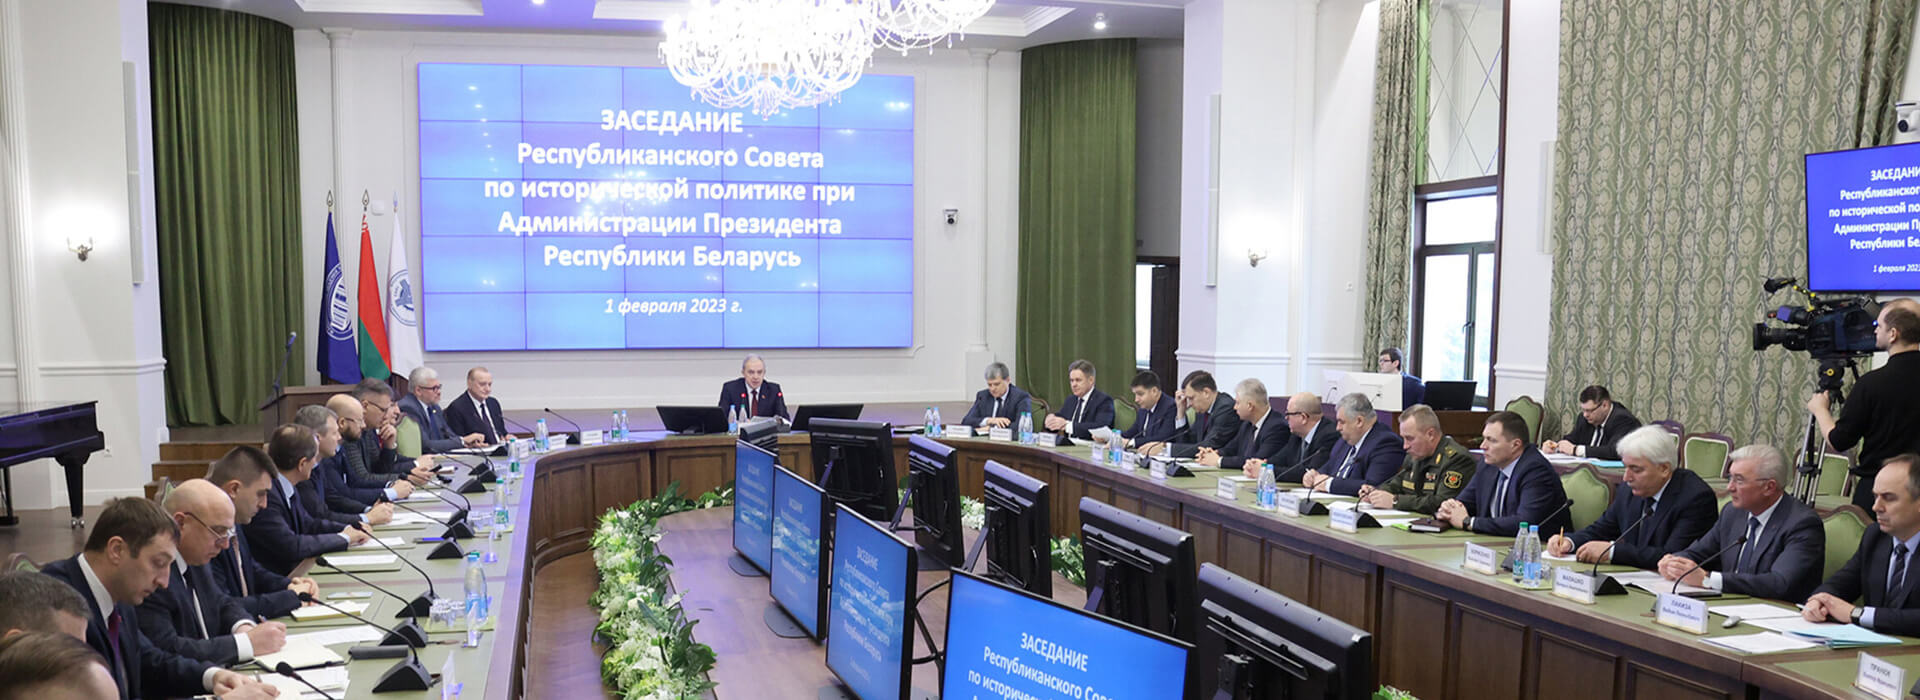 iSANS: Российско-беларусская комиссия по истории может стать репрессивным органом